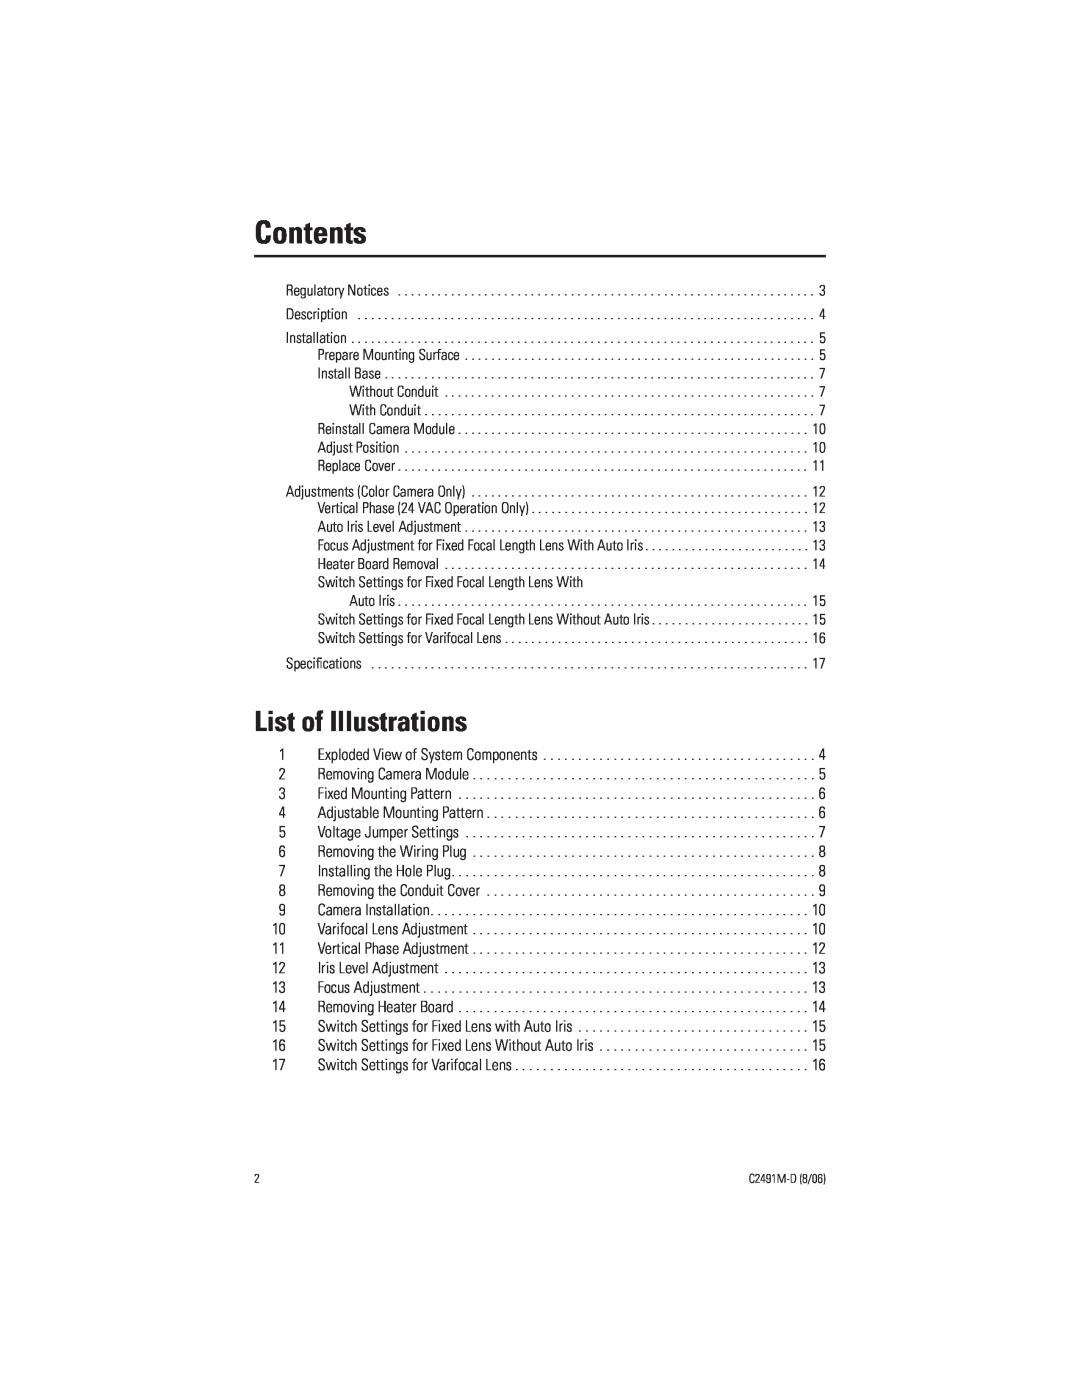 Pelco ICS210 manual List of Illustrations, Contents 